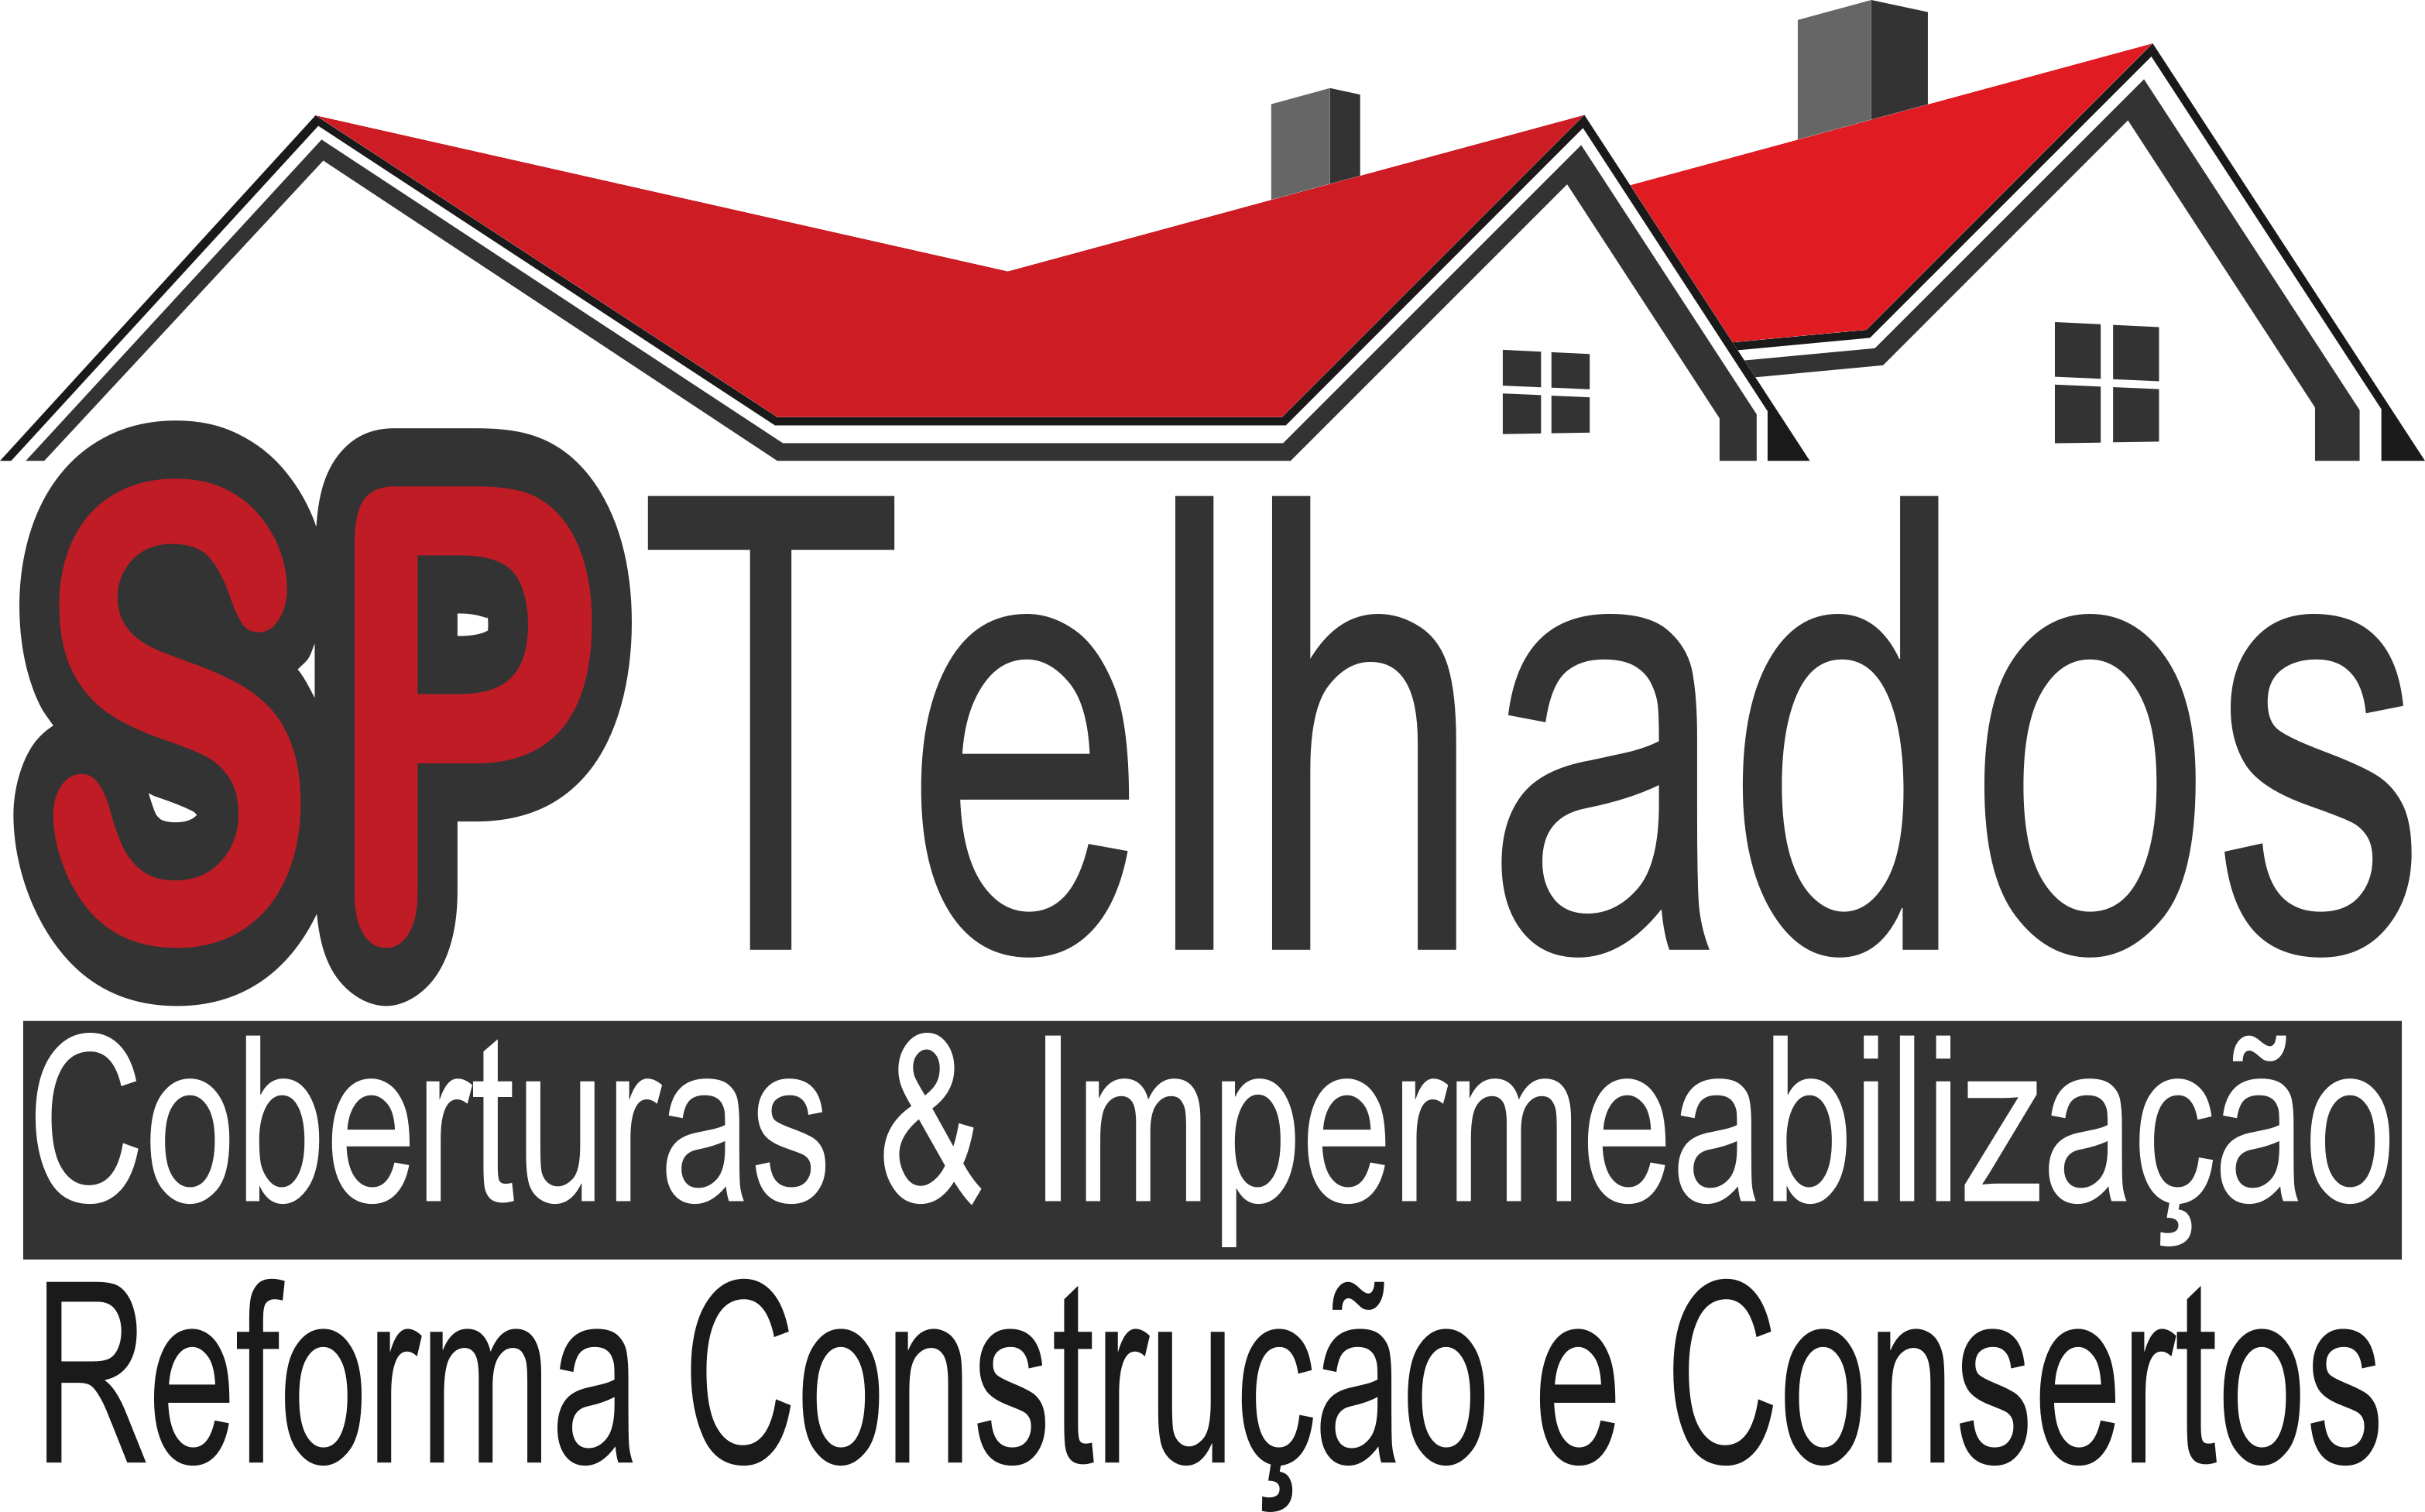 Logo da SP Telhados vetor de telhados vermelhos com o slogan da SP Telhados e Impermeabilizações logo abaixo